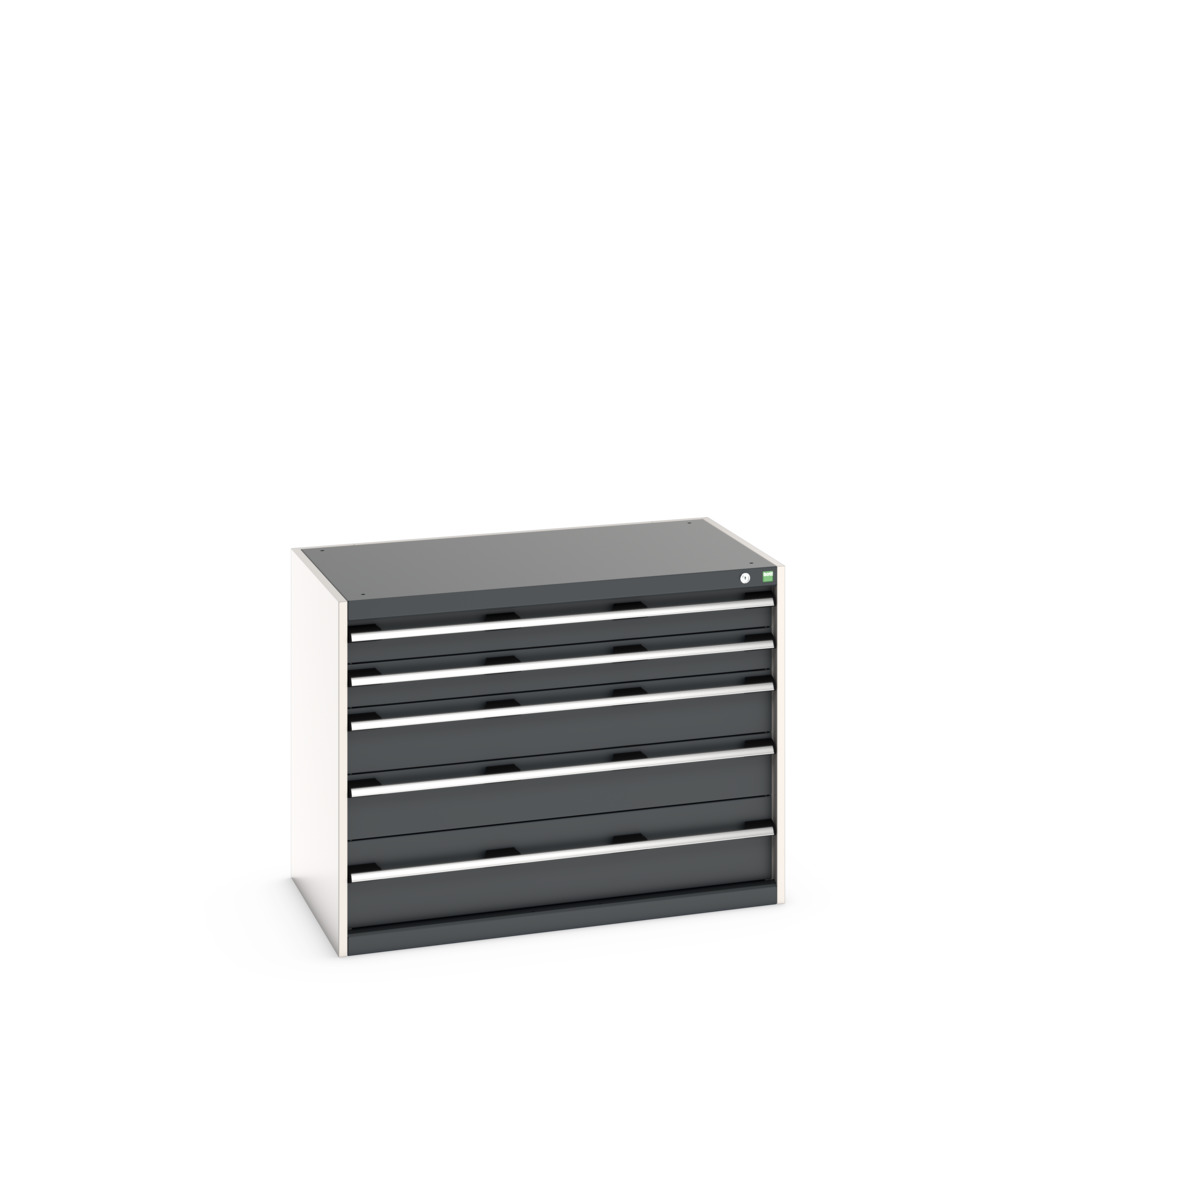 40021010.19V - cubio drawer cabinet